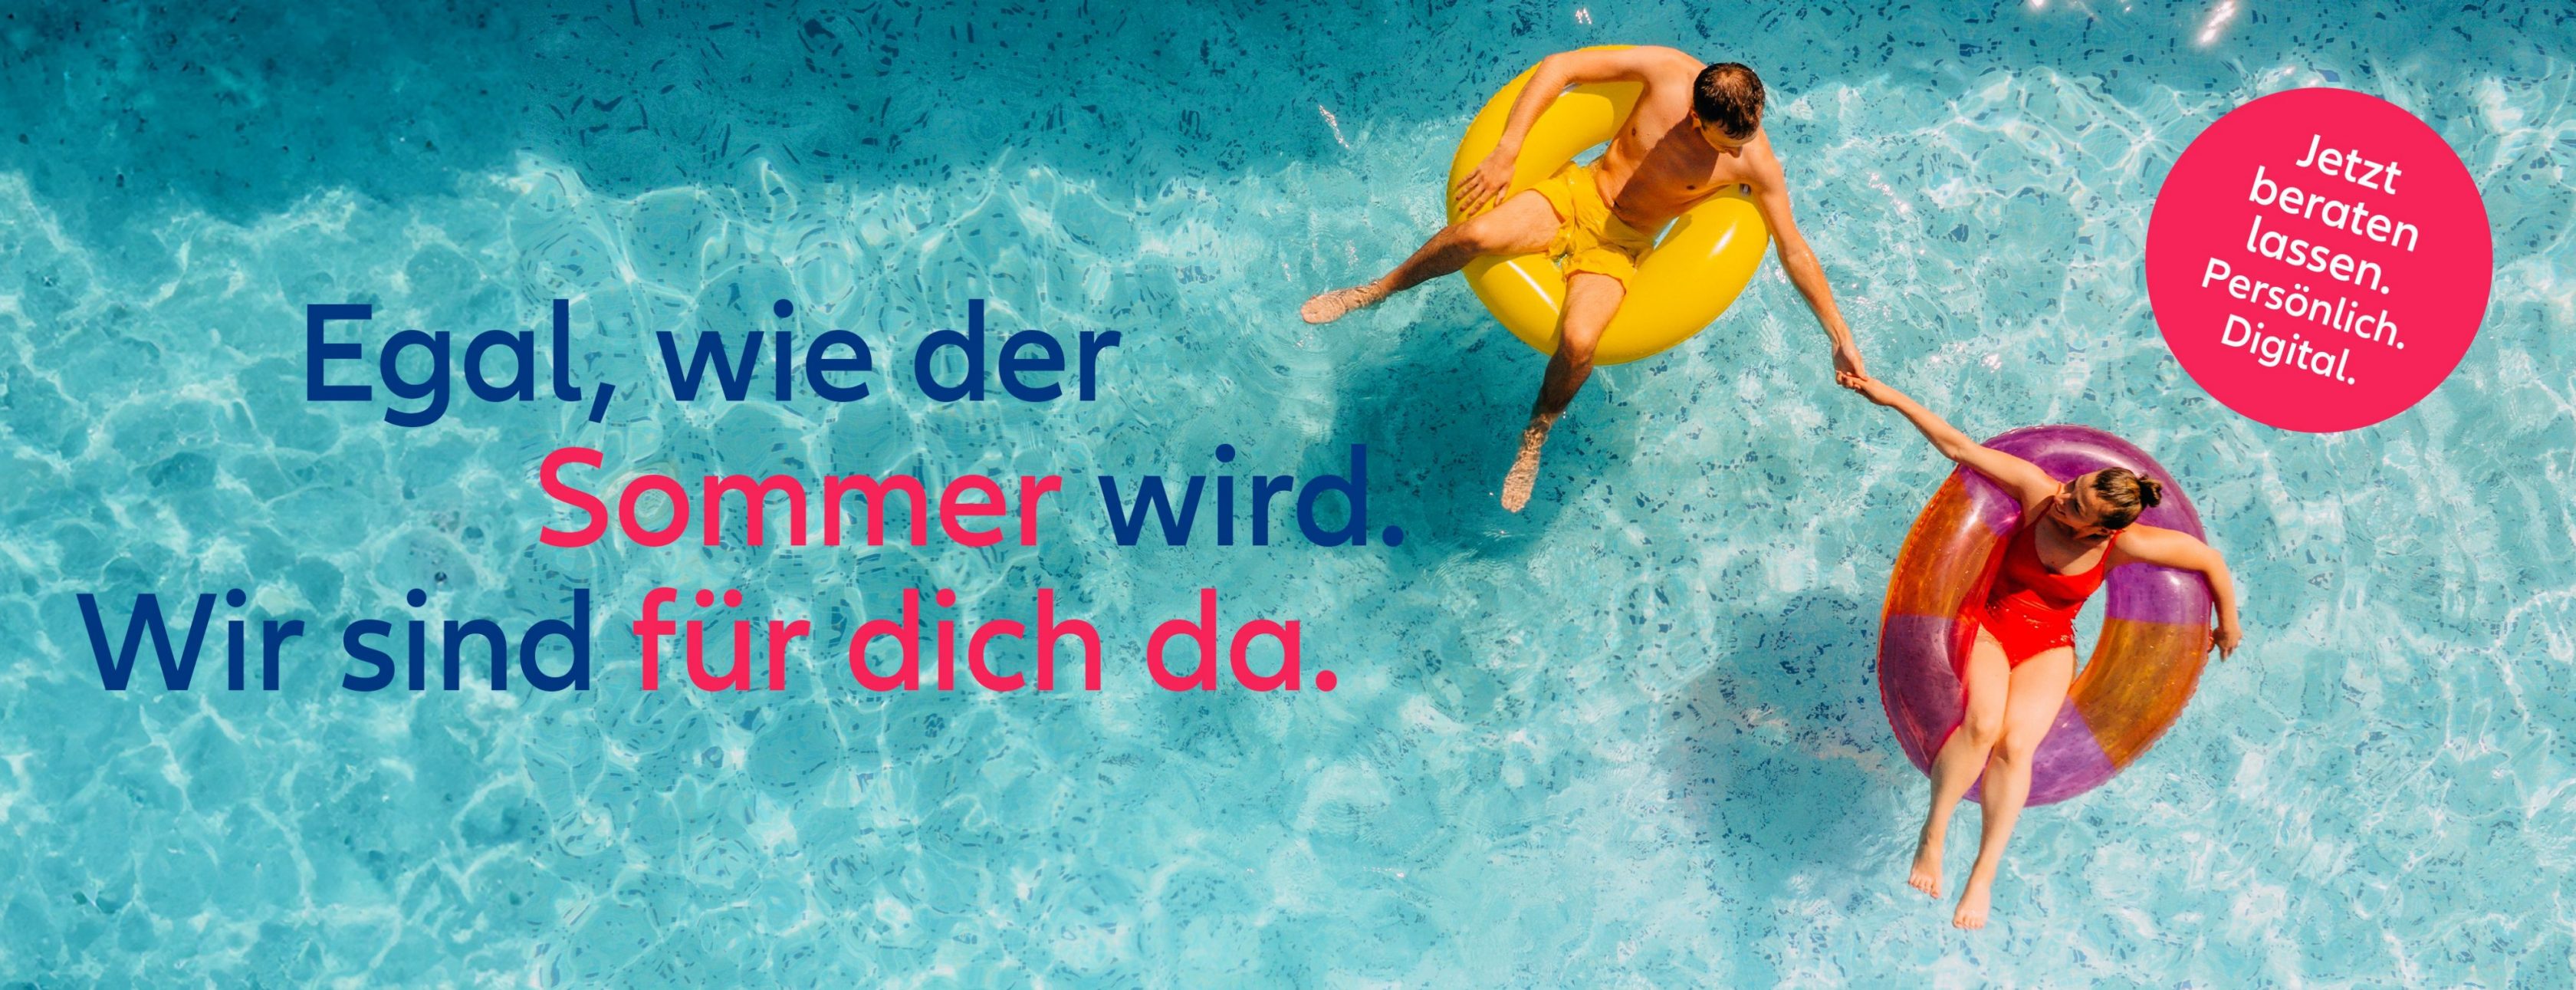 Allianz Versicherung Marco Rutsch Rosengarten - Wir sind für dich da, egal wie der Sommer wird.